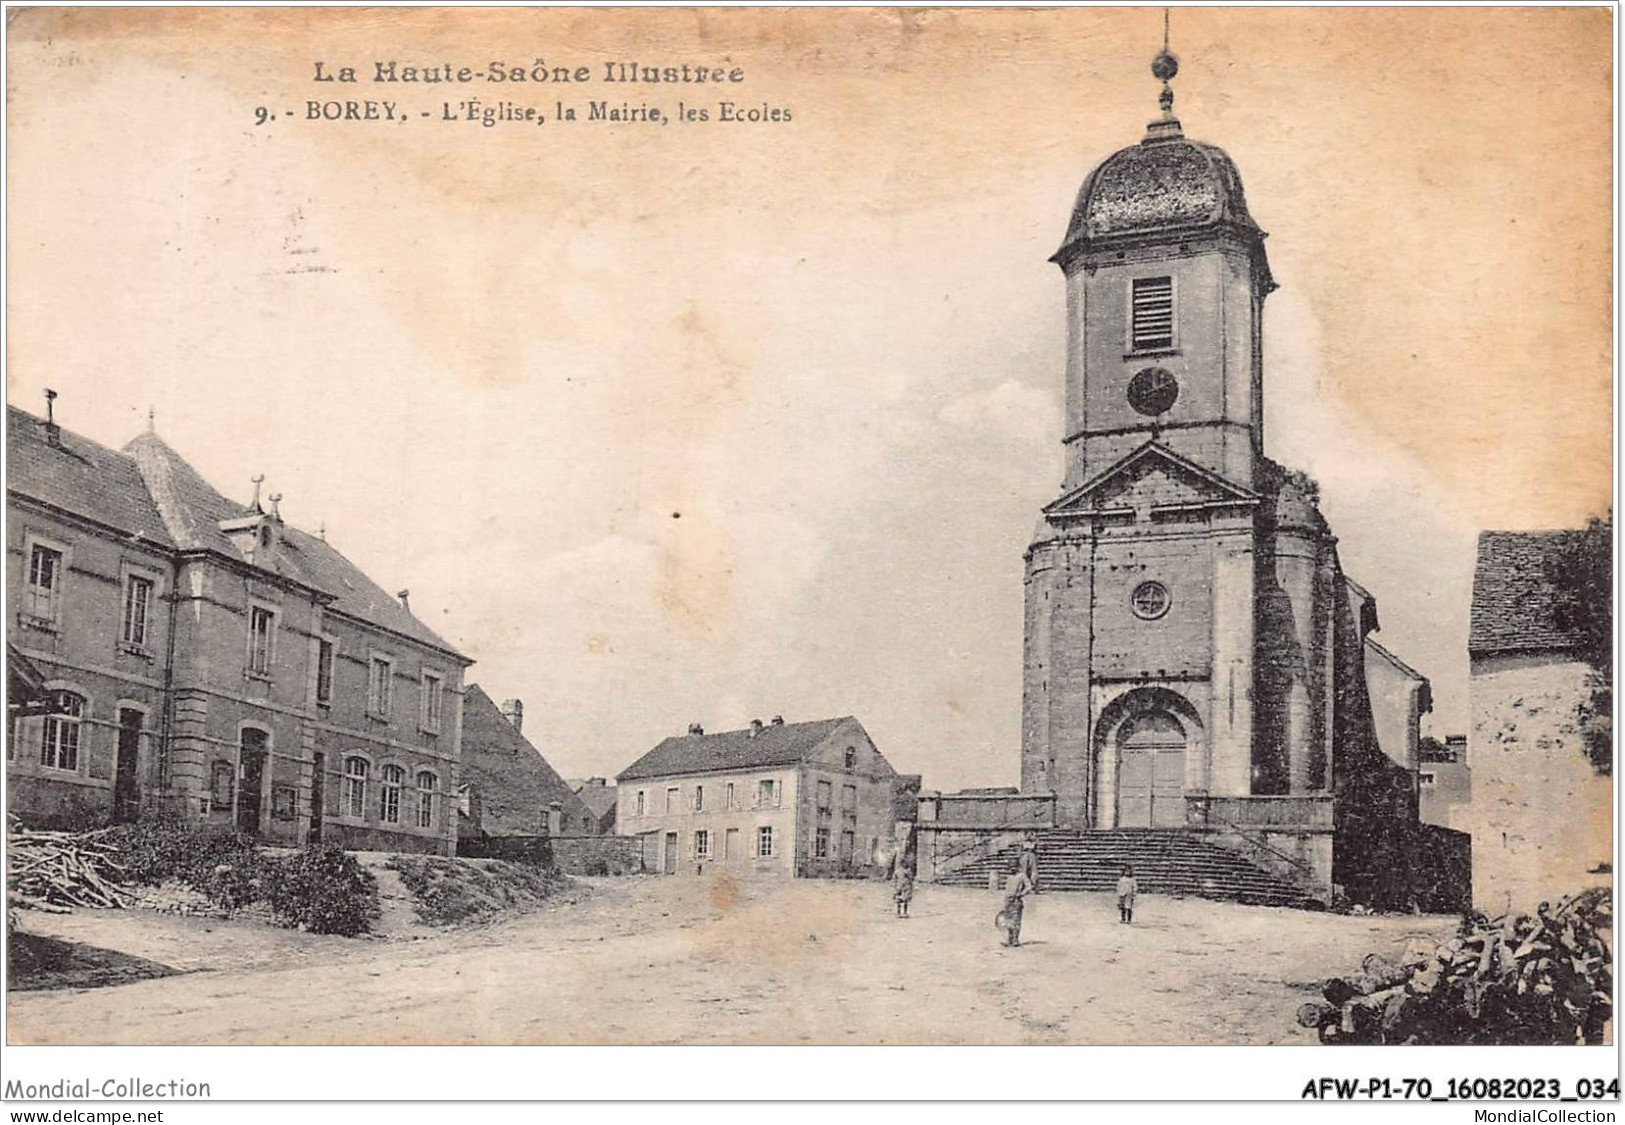 AFWP1-70-0018 - La Haute-saône Illustrée - BOREY - L'église - La Mairie - Les écoles - Vesoul